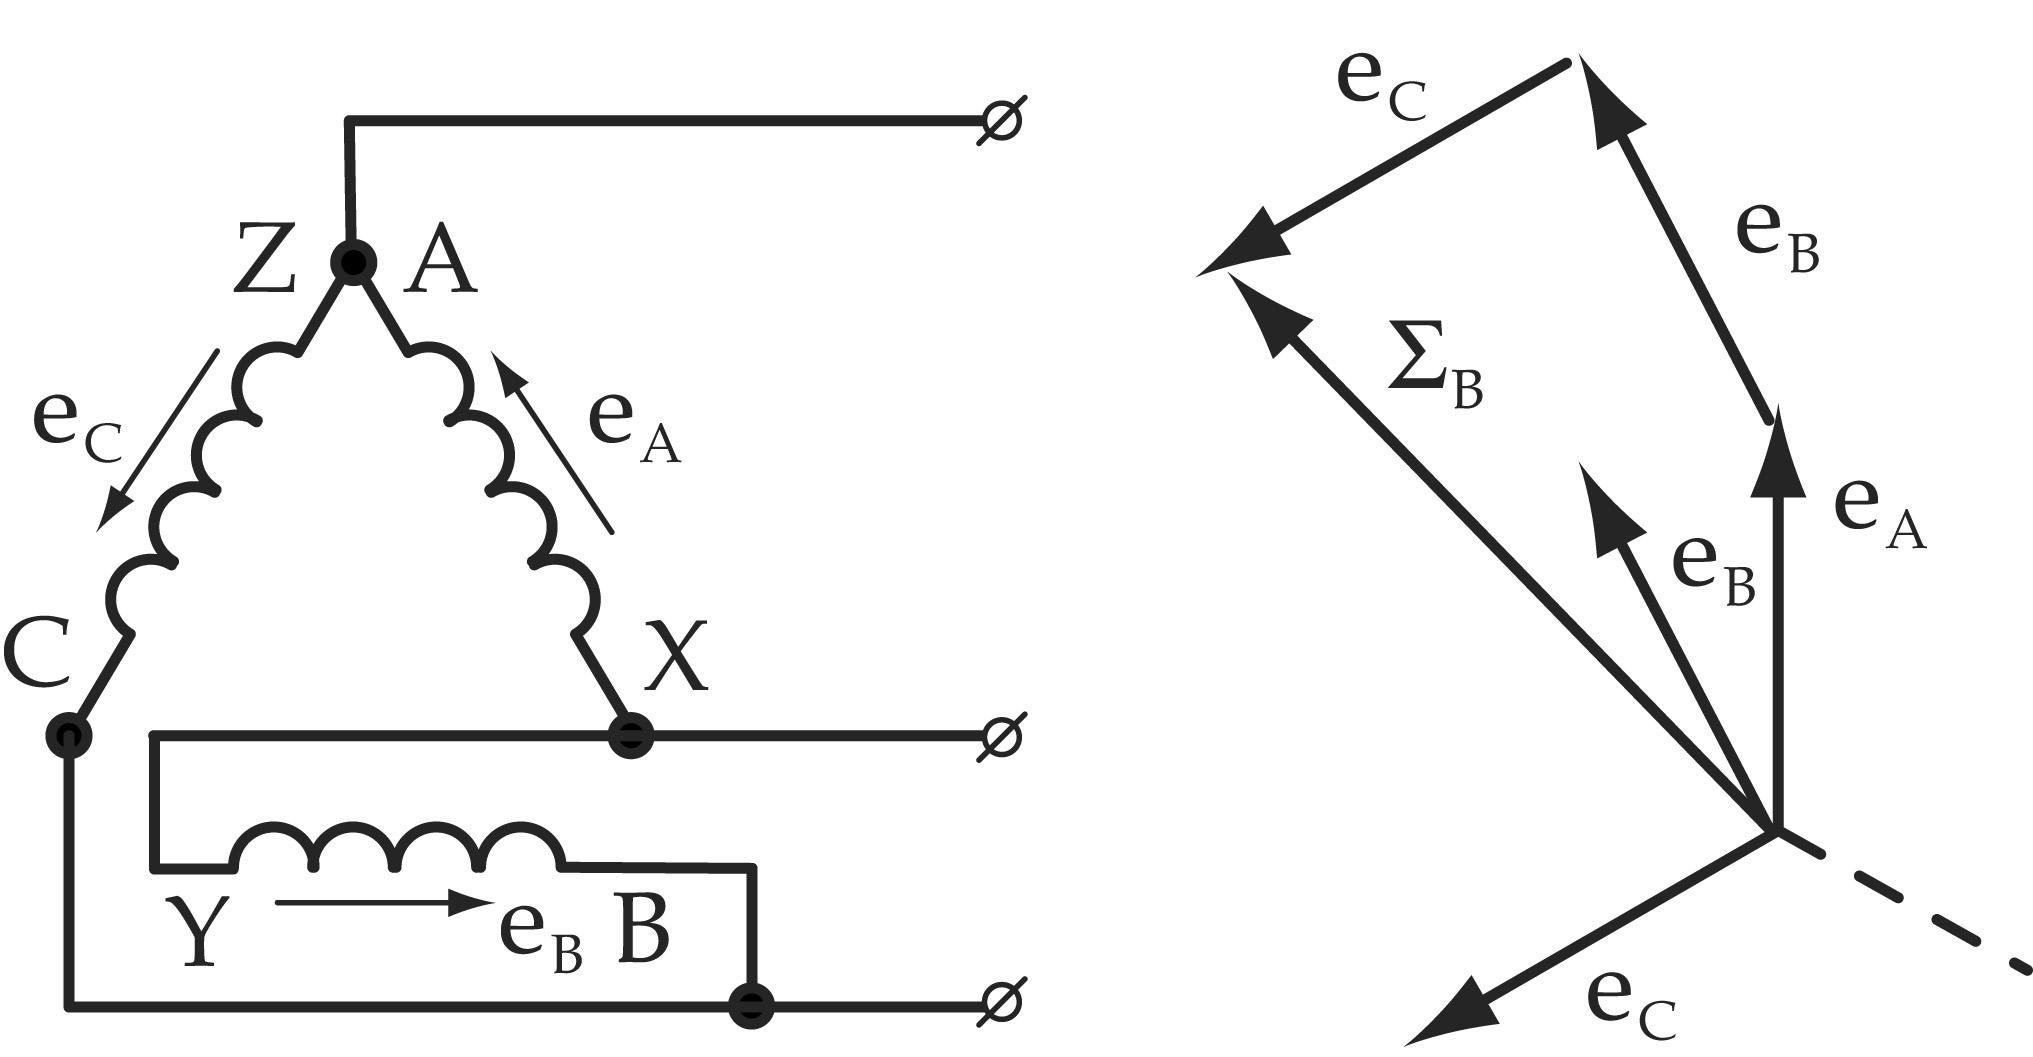 Соединение обмоток звездой и треугольником. Схема соединения трехфазного генератора треугольником. Соединение обмоток трехфазного генератора треугольником. Соединение обмоток генератора треугольником схема цепи. Соединение обмоток генератора звездой и треугольником.